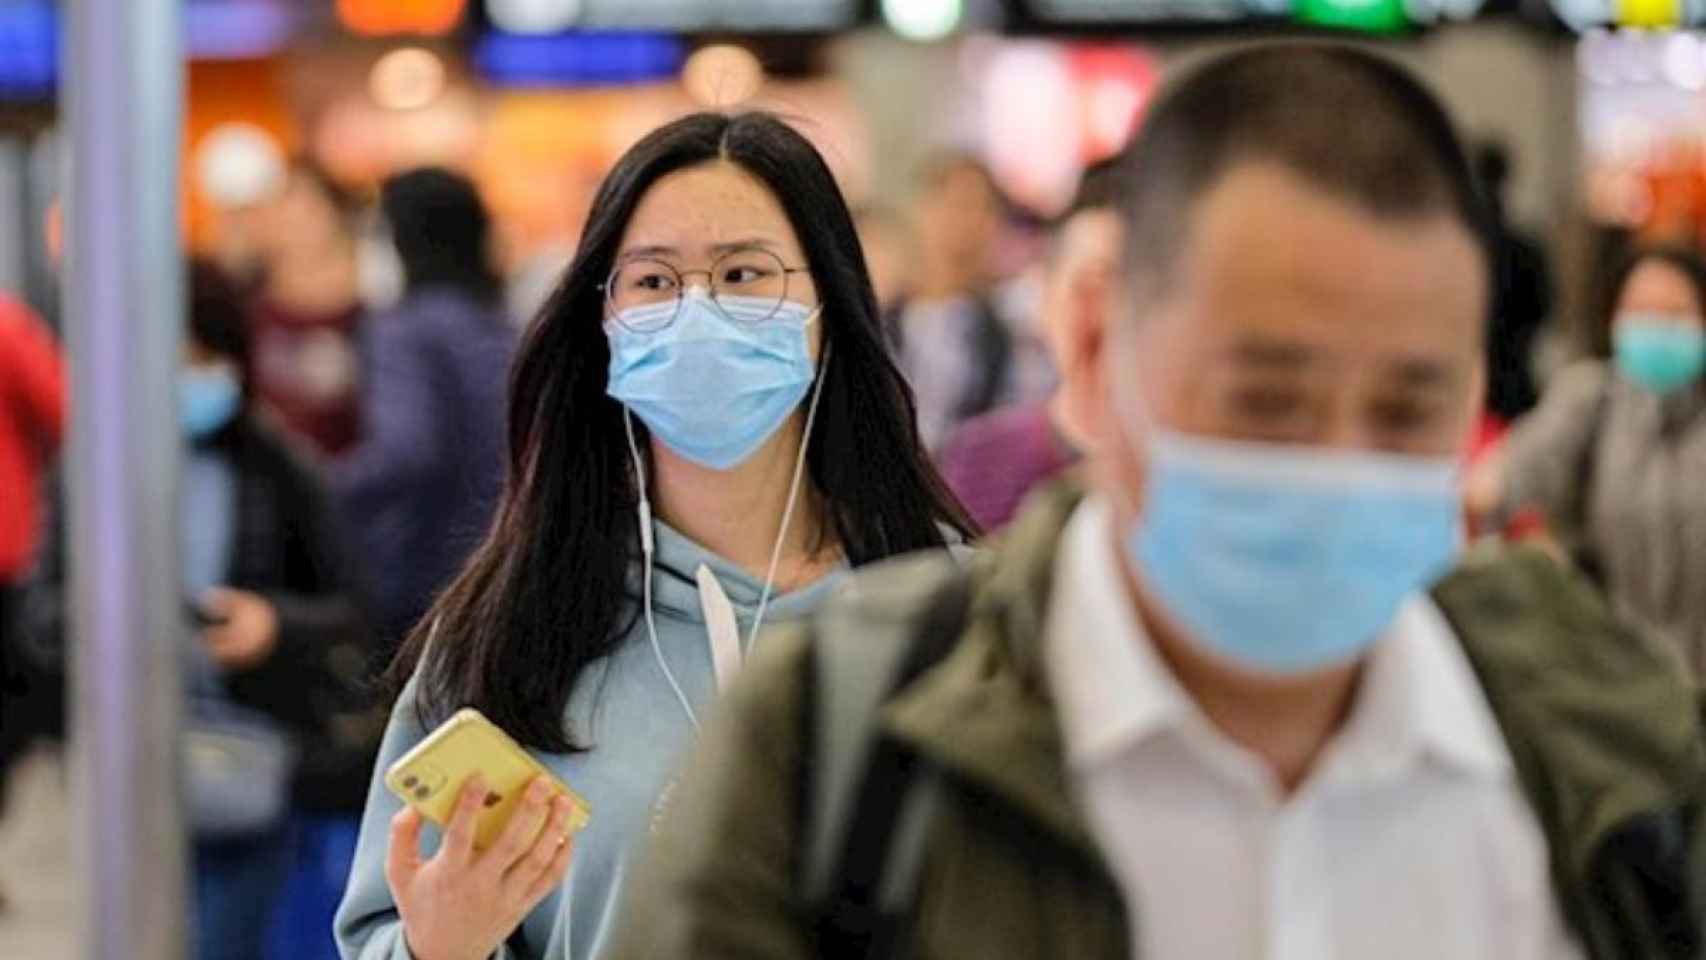 Personas con mascarilla en un aeropuerto de China, que prohíbe los viajes organizados por el coronavirus / EP